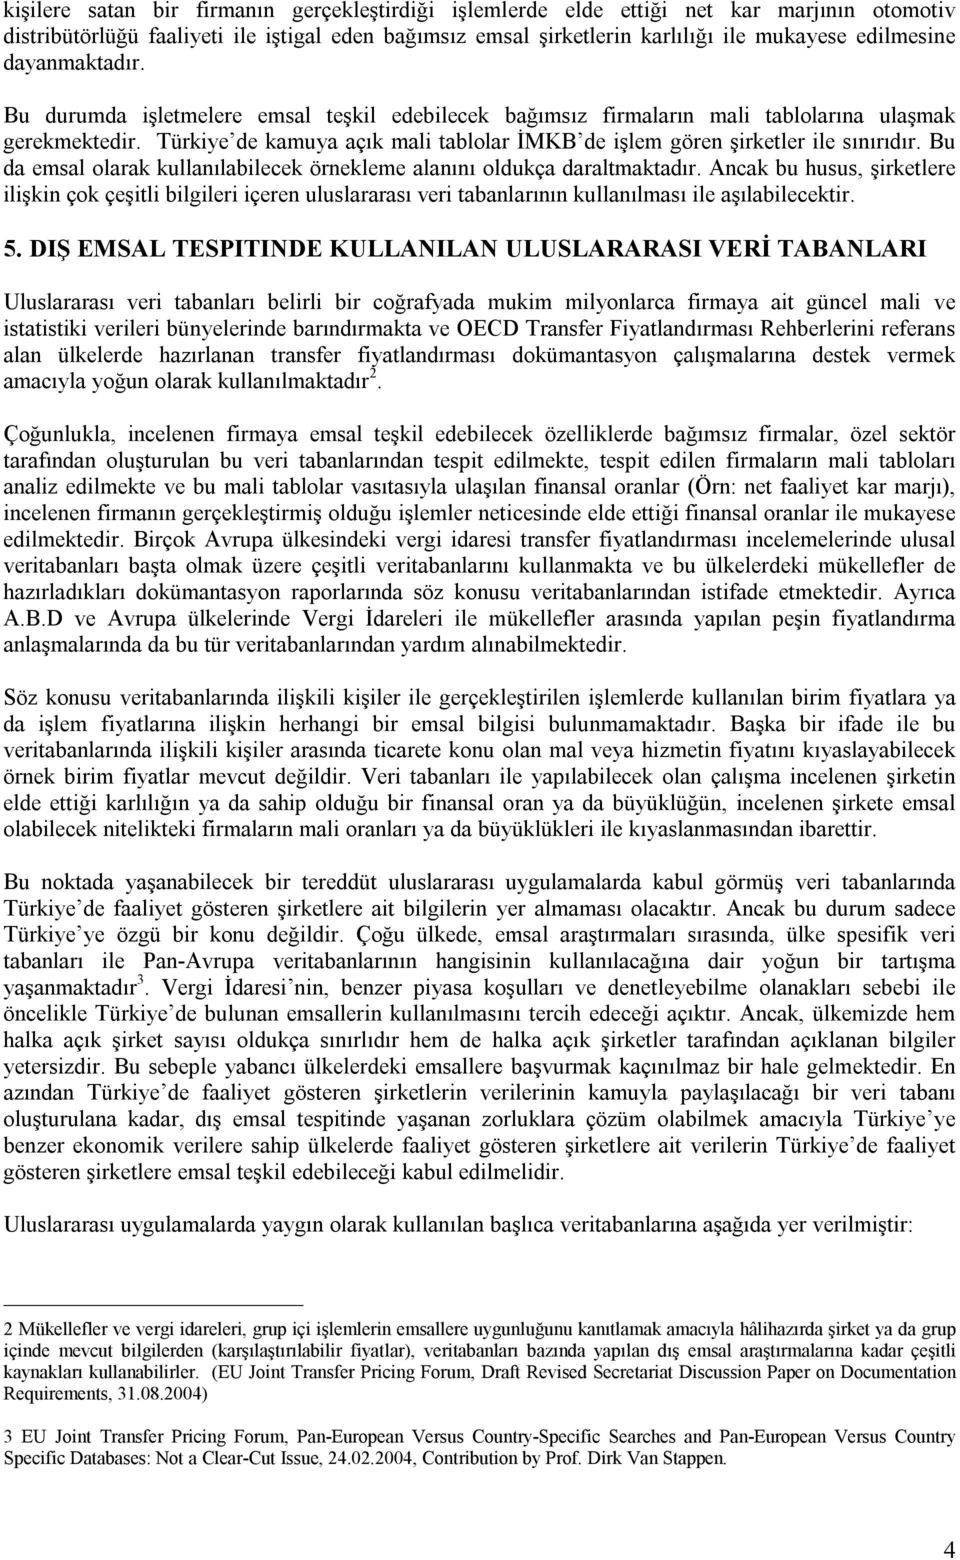 Türkiye de kamuya açık mali tablolar İMKB de işlem gören şirketler ile sınırıdır. Bu da emsal olarak kullanılabilecek örnekleme alanını oldukça daraltmaktadır.